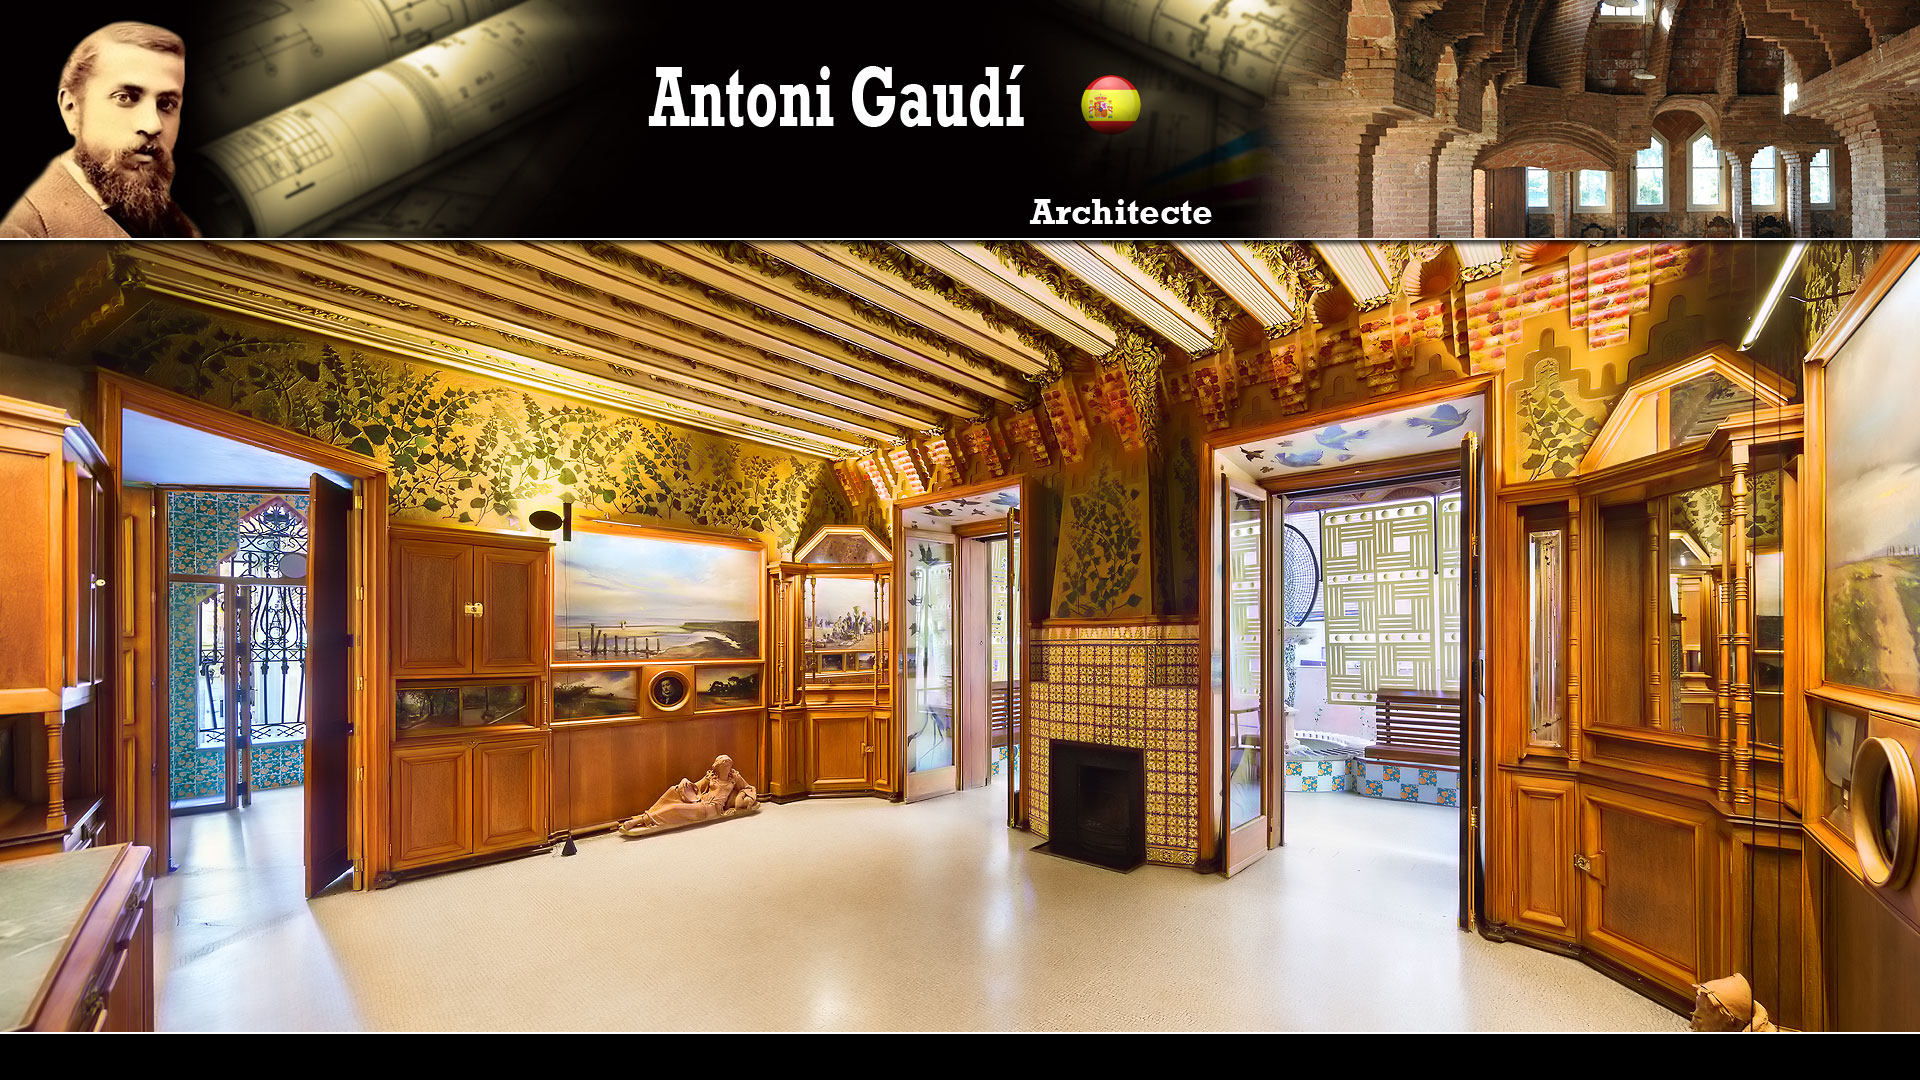 La Casa Vicens (Antoni Gaudí)